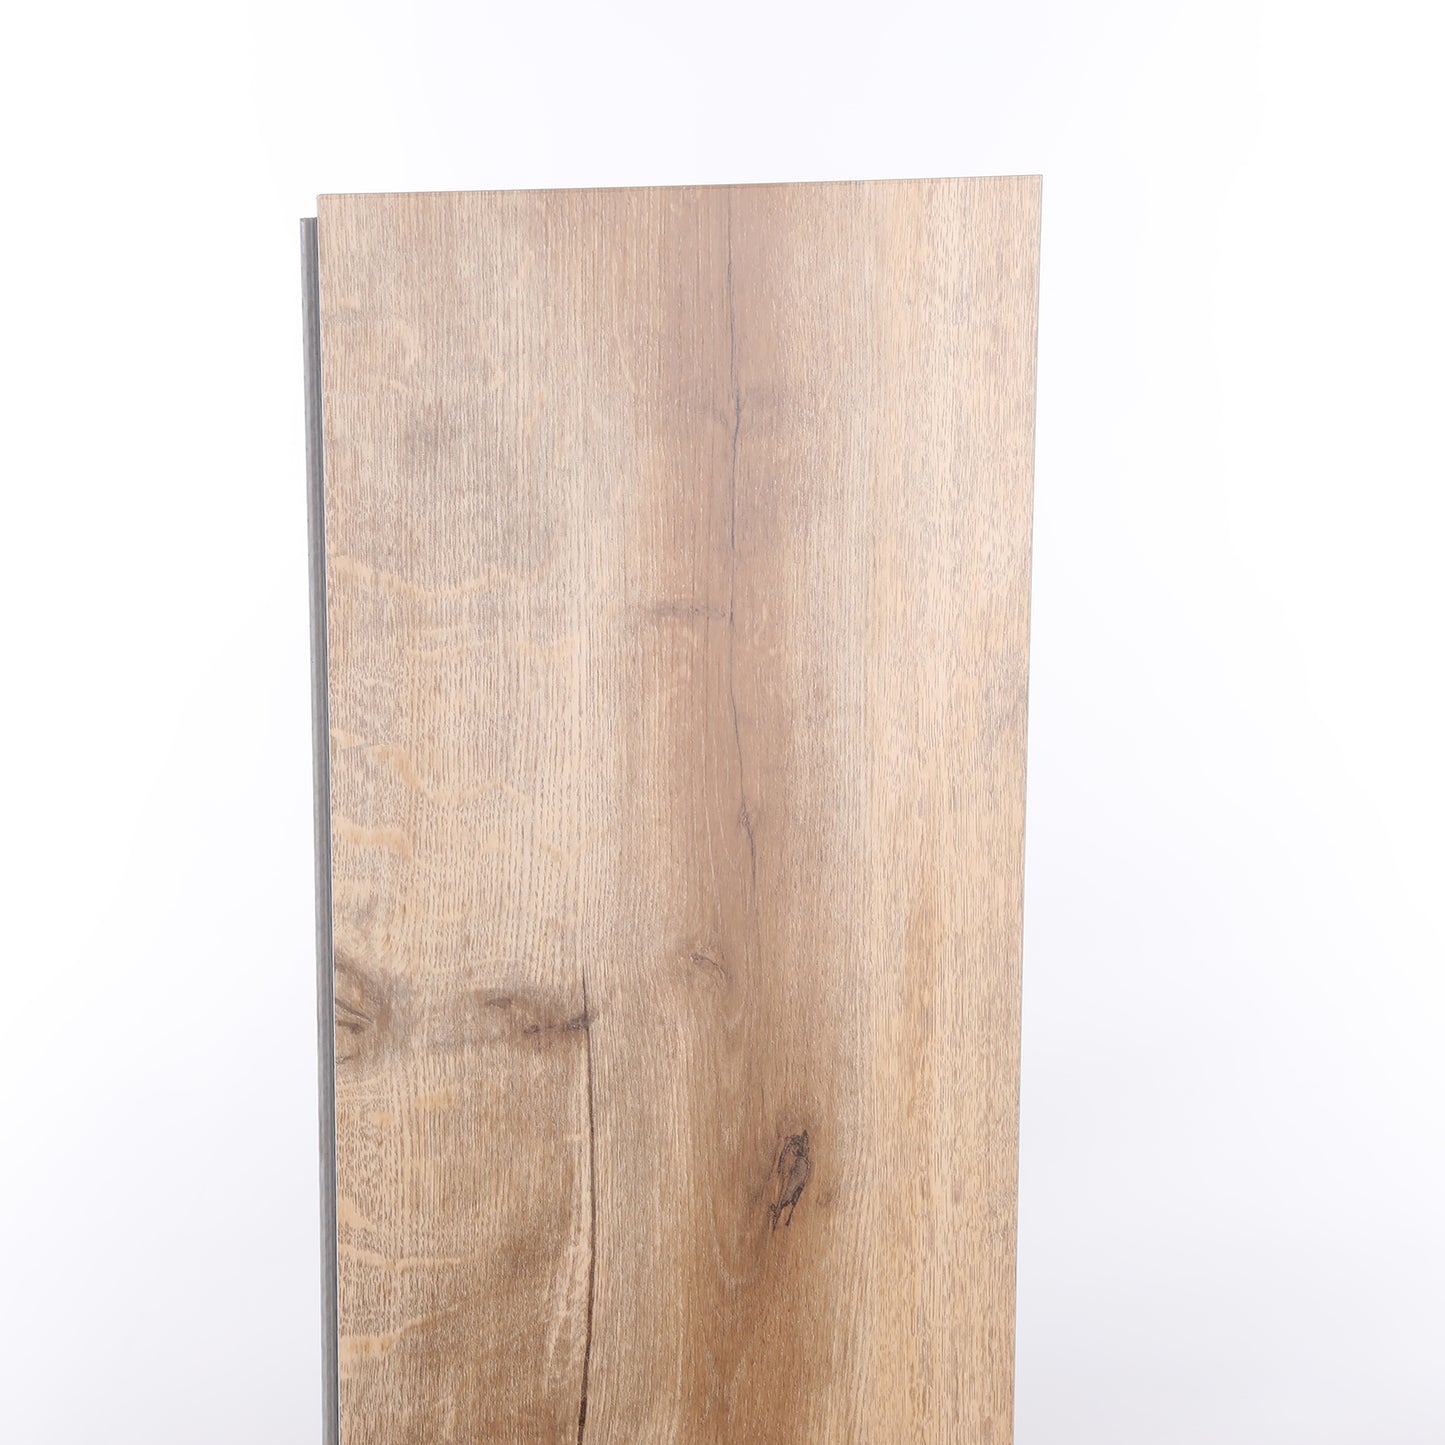 6mm Creme Brule HDPC® Waterproof Luxury Vinyl Plank Flooring 9.13 in. Wide x 60 in. Long